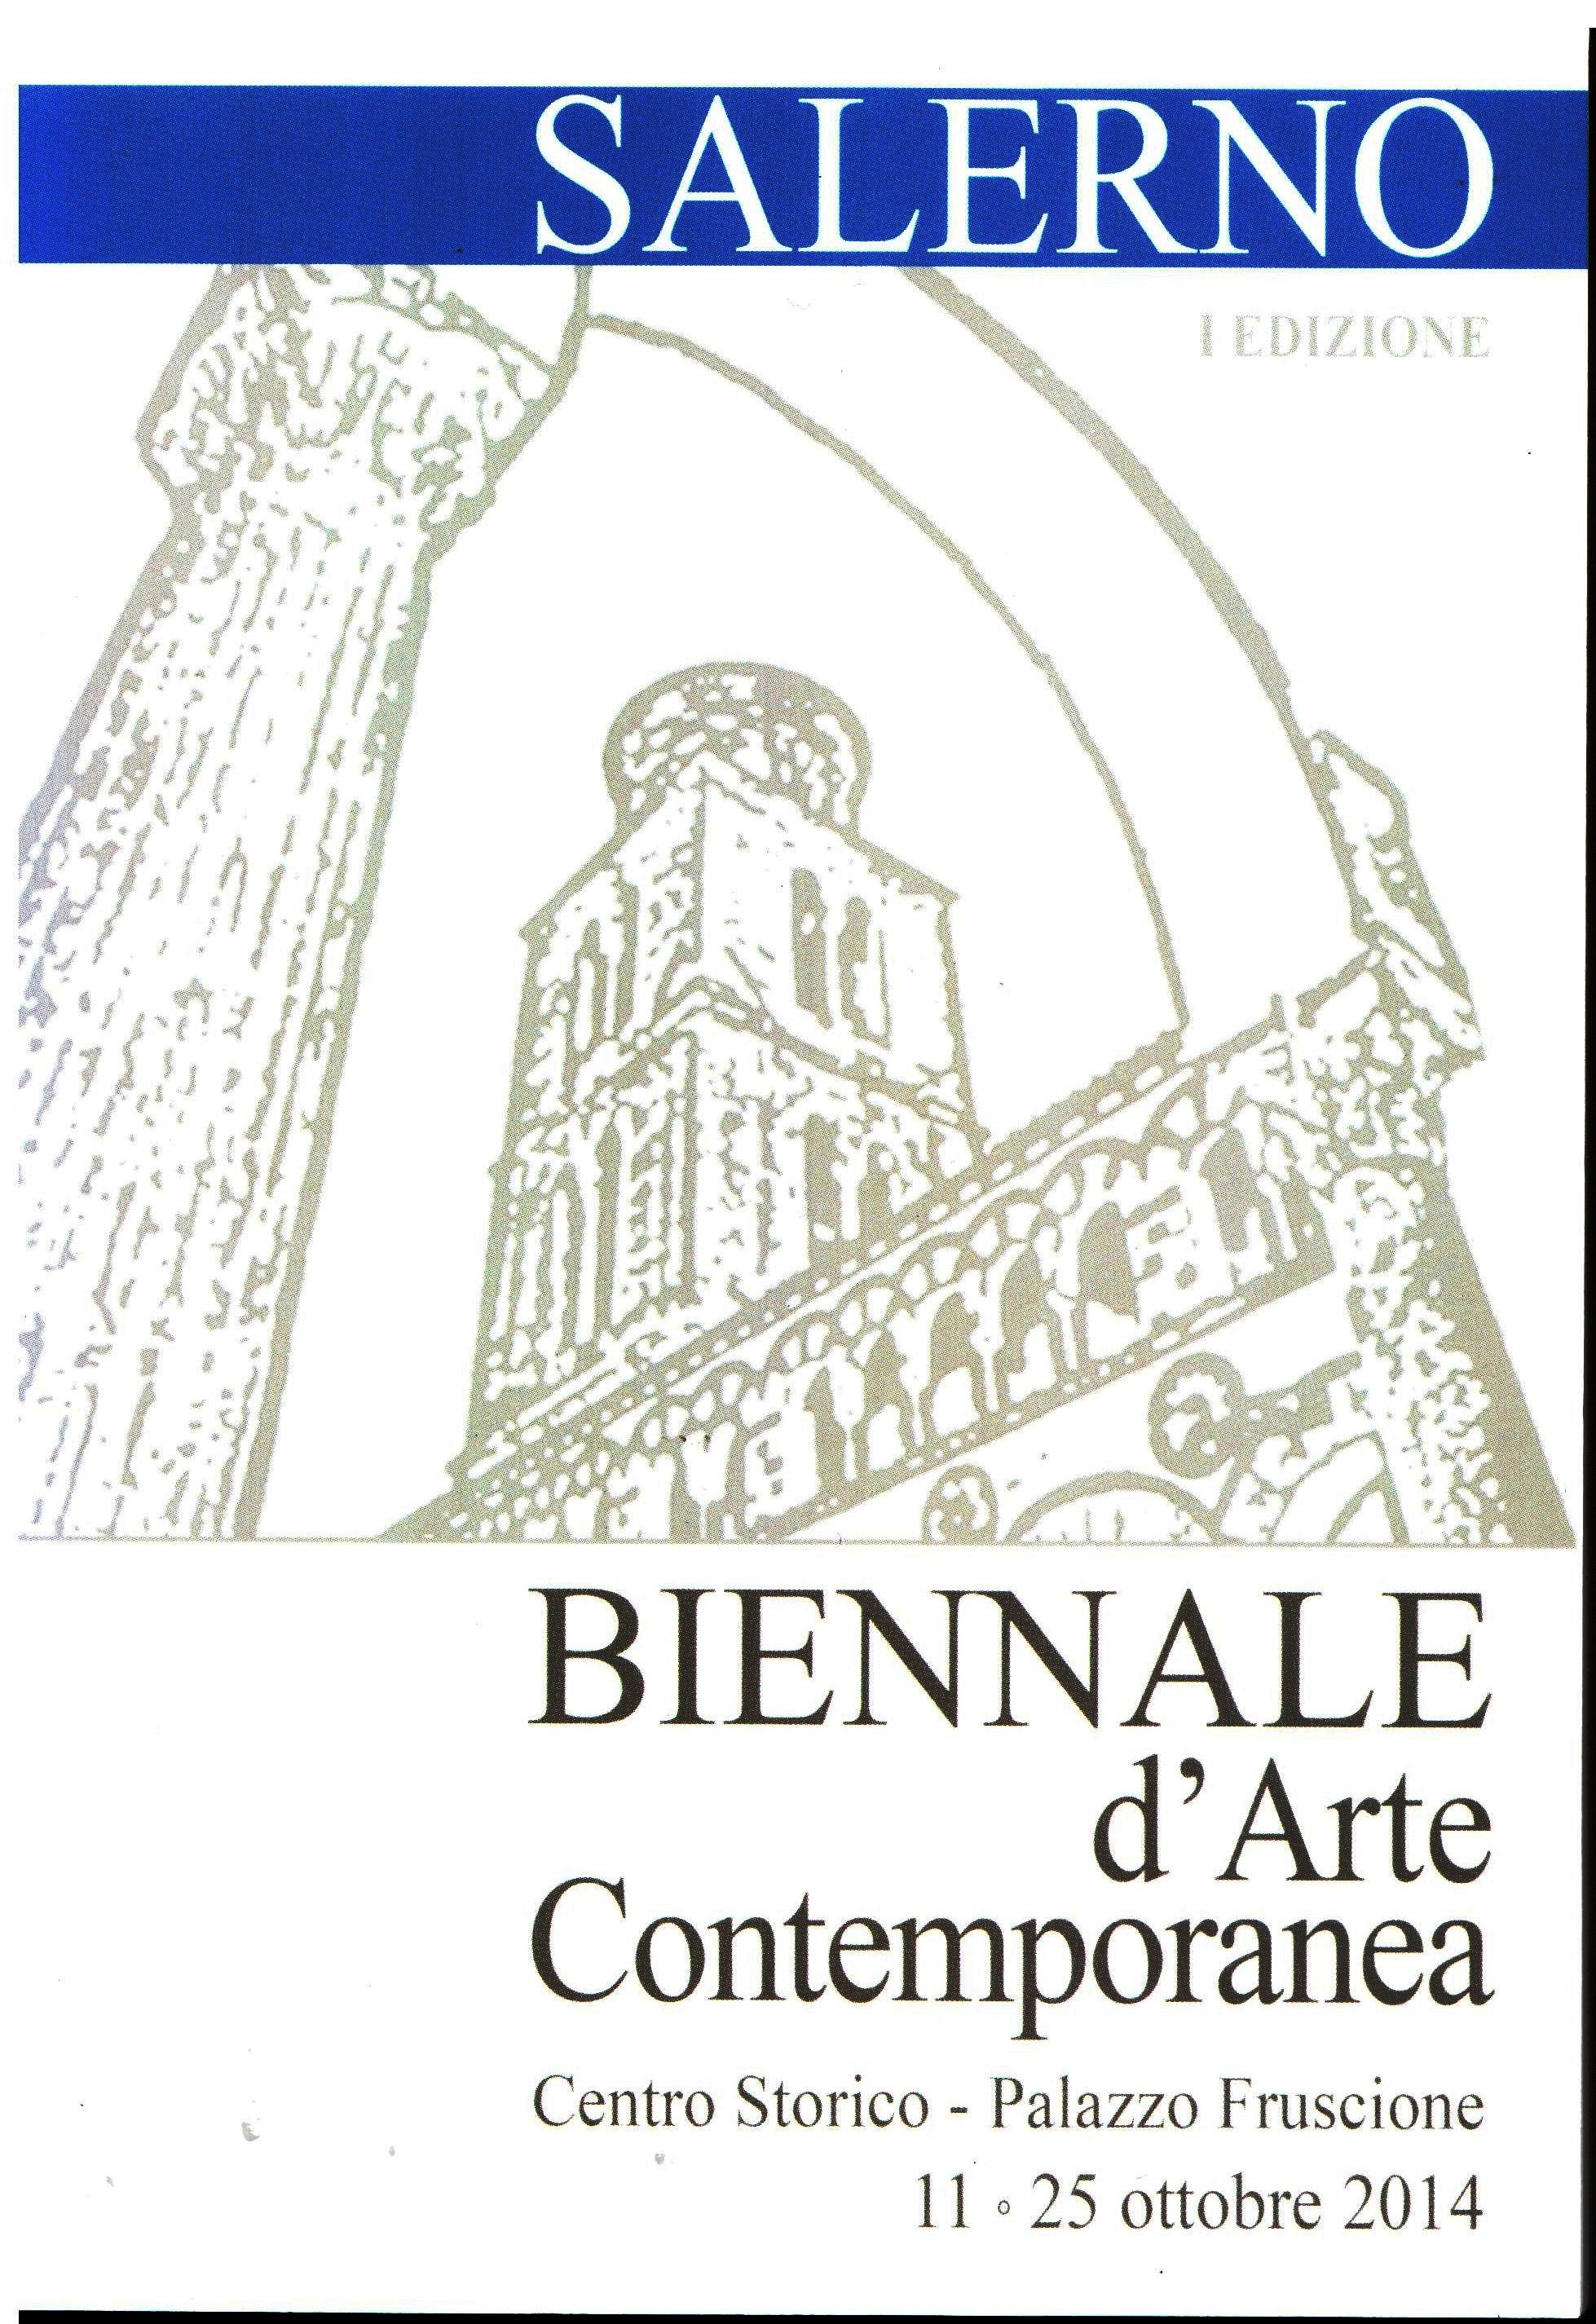 Credits, Biennale d'Arte Contemporanea. I Edizione , Salerno 2014.